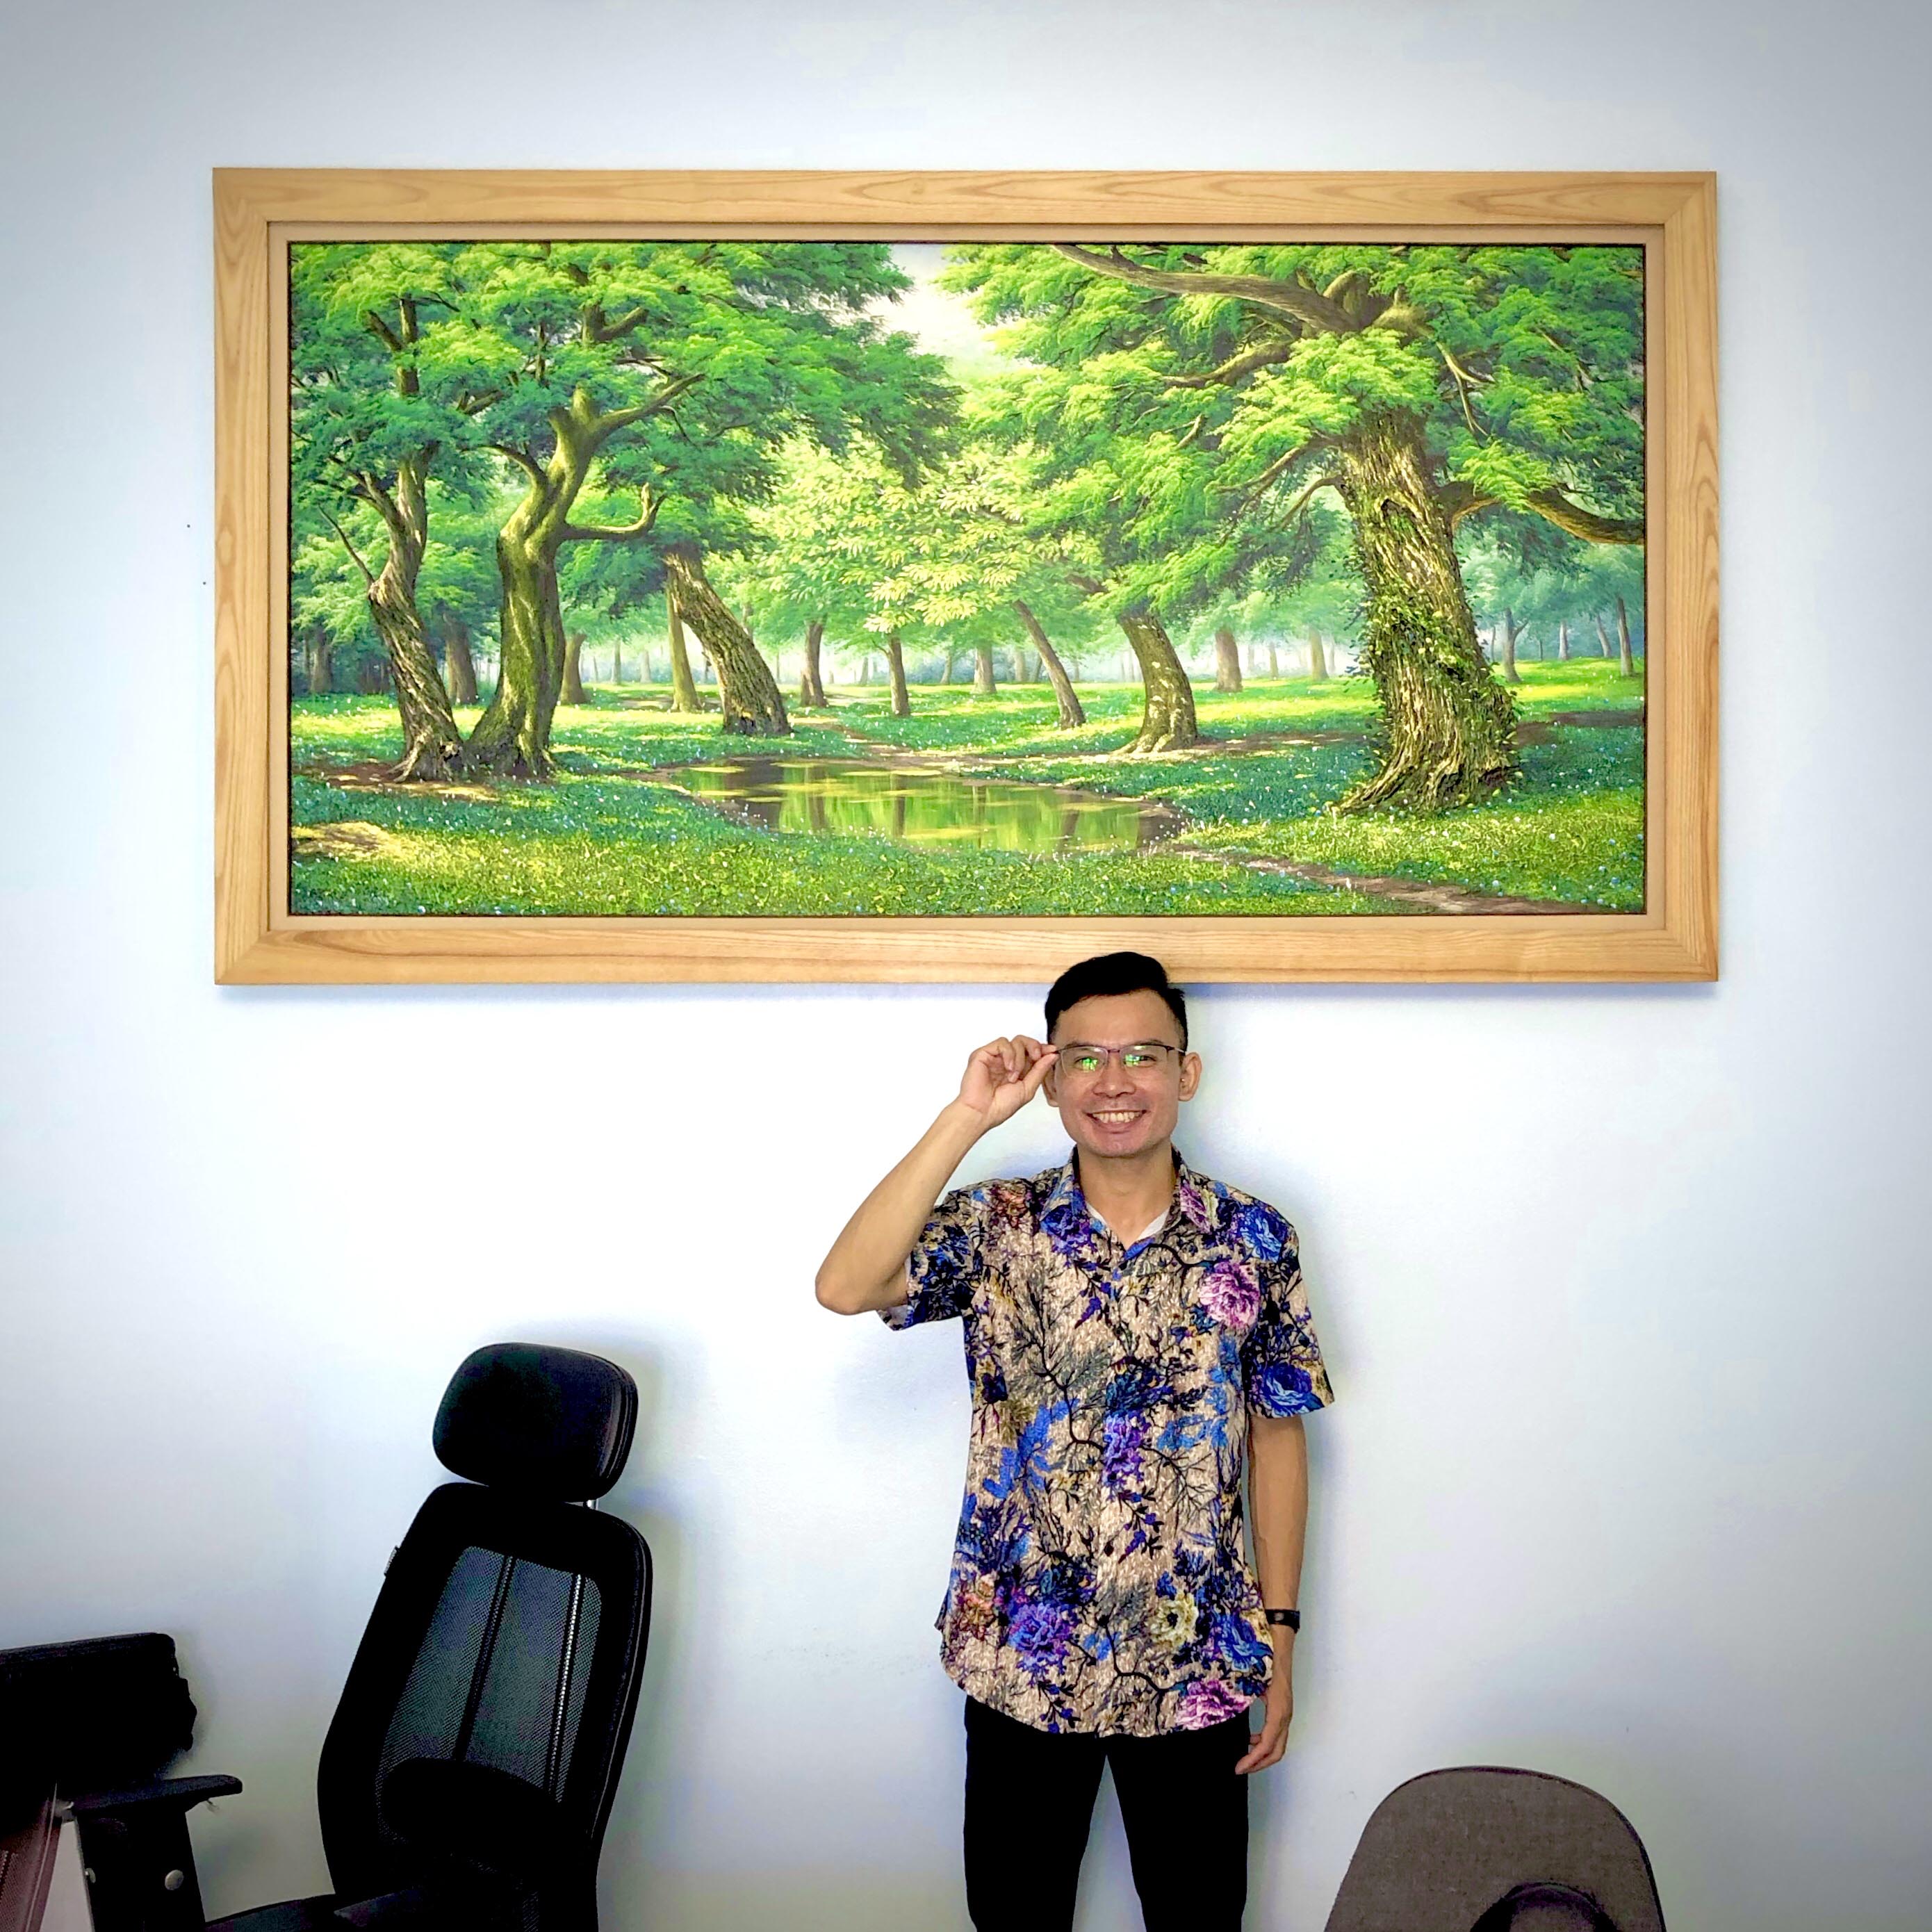 Lắp đặt bức tranh sơn dầu phong cảnh nước ngoài cho khách hàng tại Trung Kính, Hà Nội 2